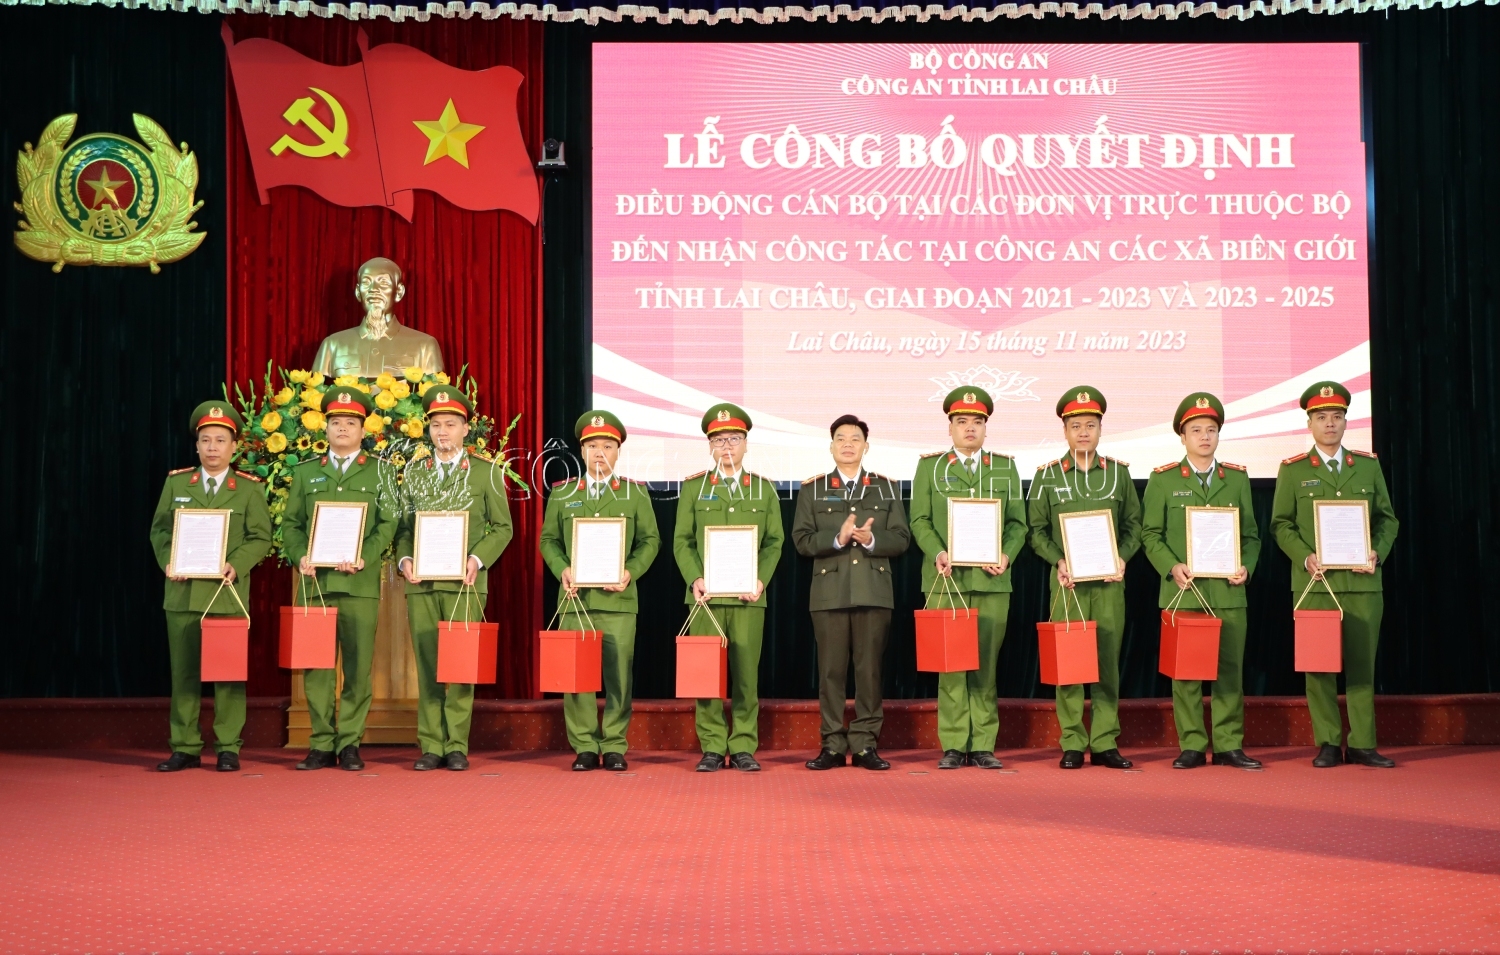 Đại tá Tao Văn Trường Phó Giám đốc Công an tỉnh trao quyết định điều động cán bộ, chiến sỹ hoàn thành thời gian công tác tại các xã biên giới